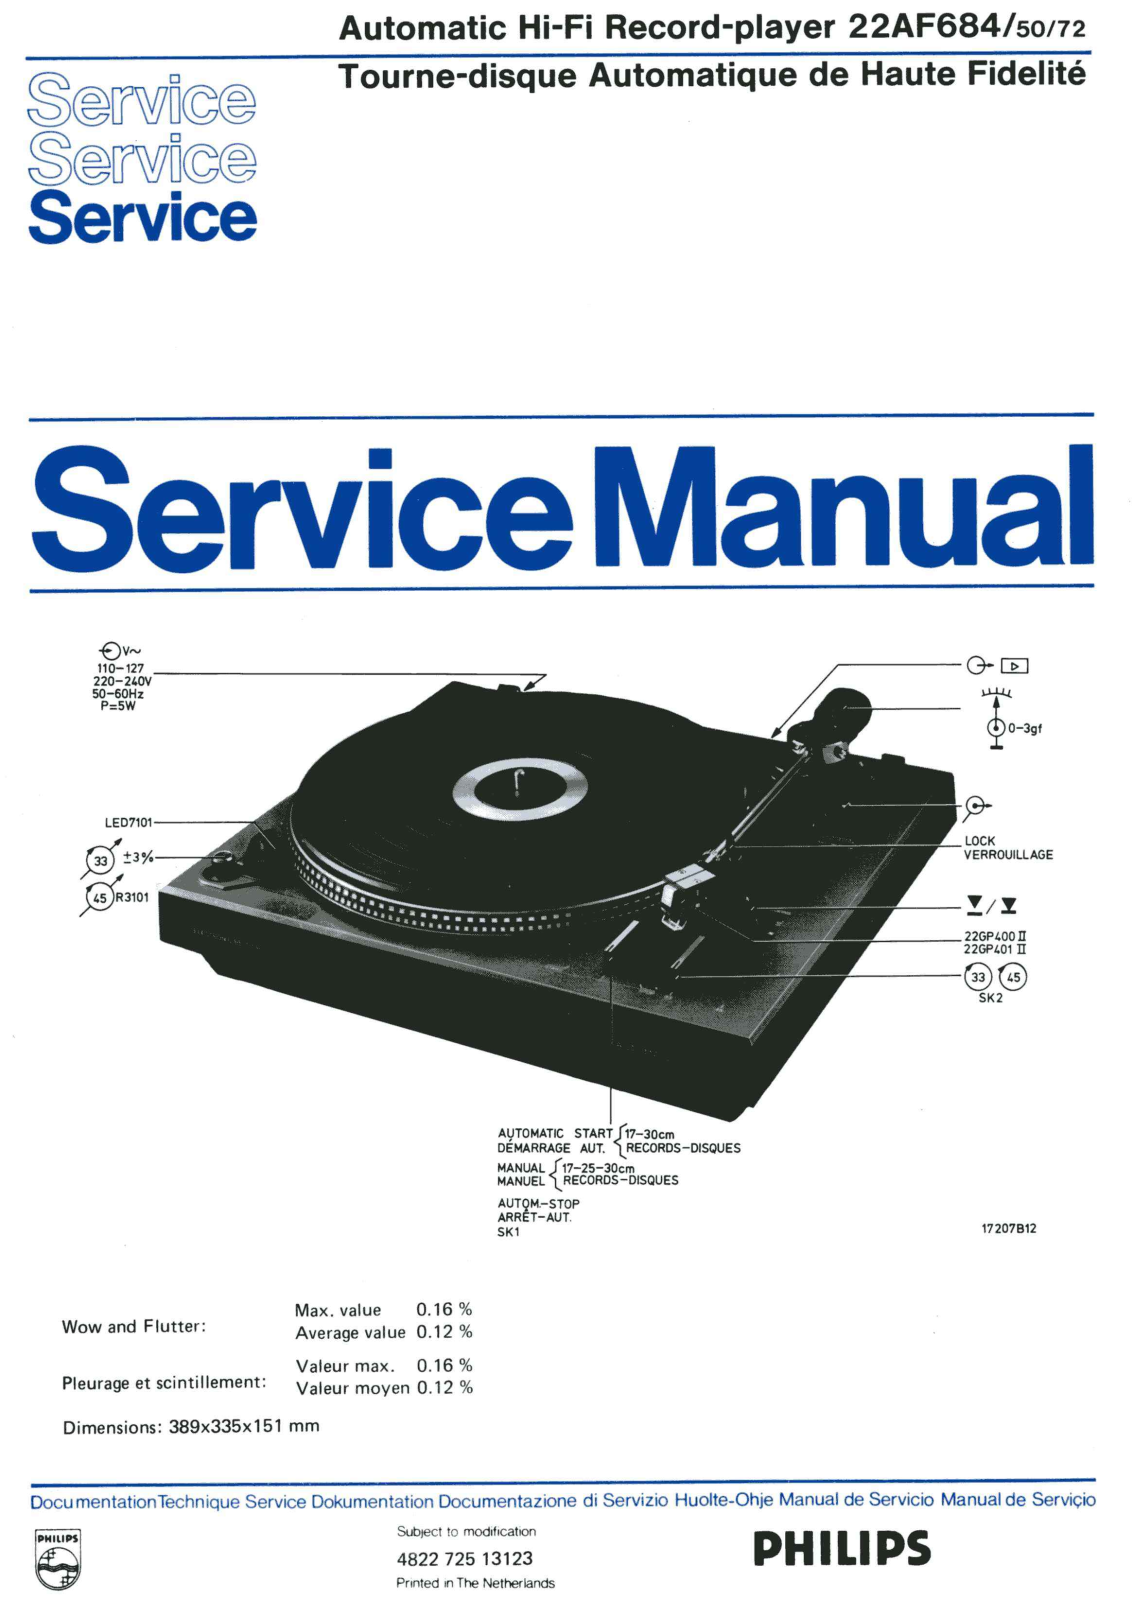 Philips AF-684 Service Manual